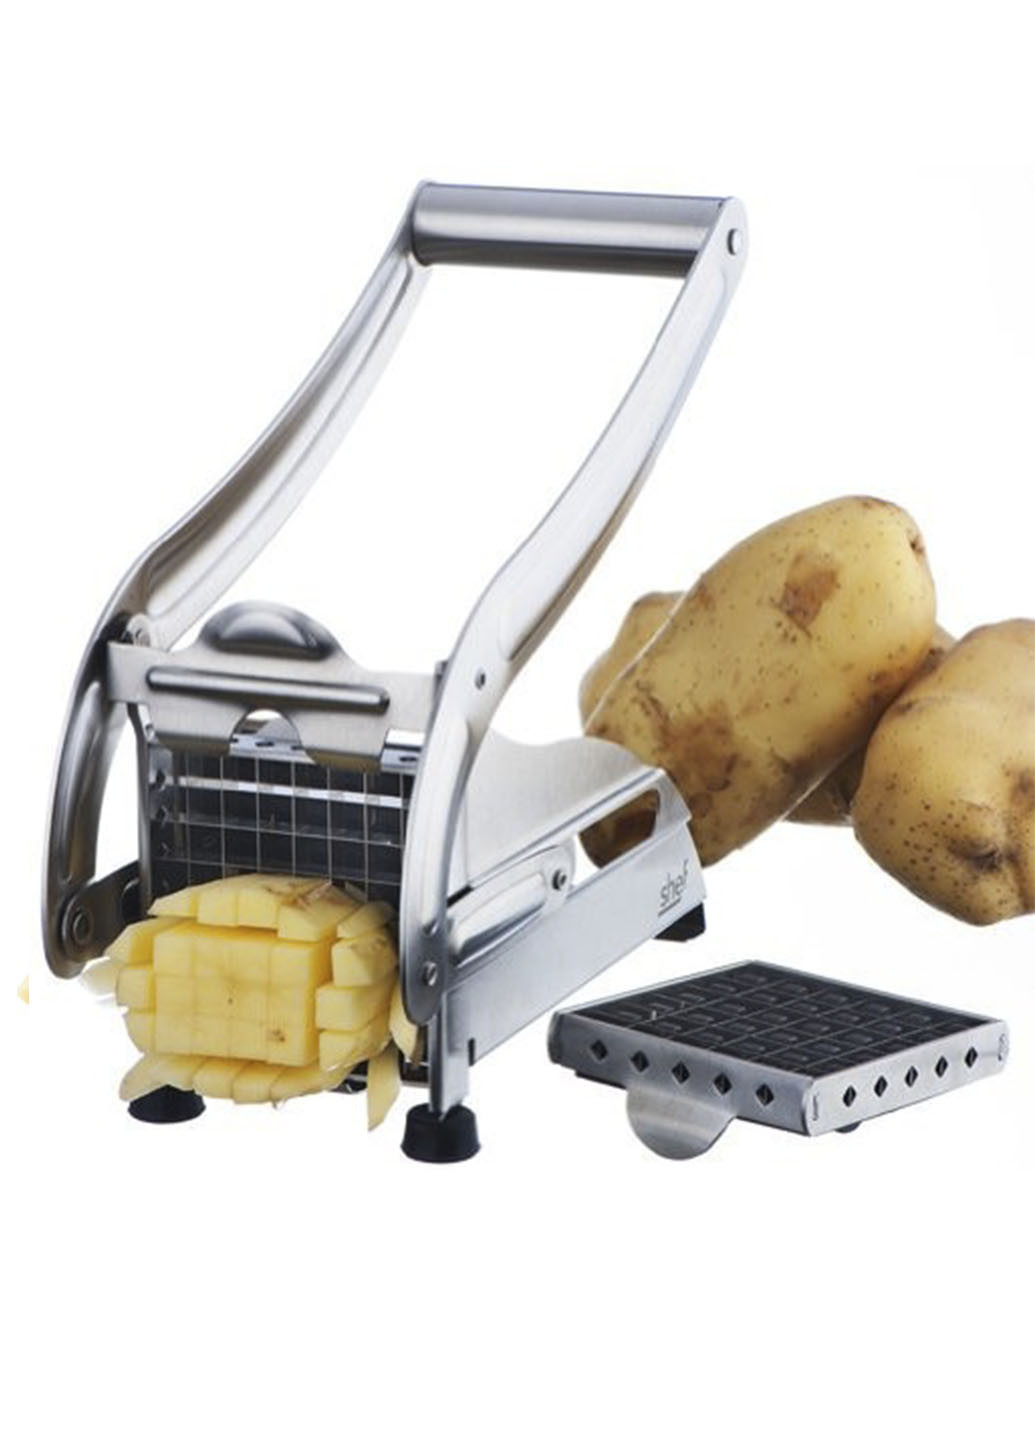 Картоплерізка (овочерізка) механічна, пристрій для різання картоплі фрі Potato Chipper Good Idea (252228998)